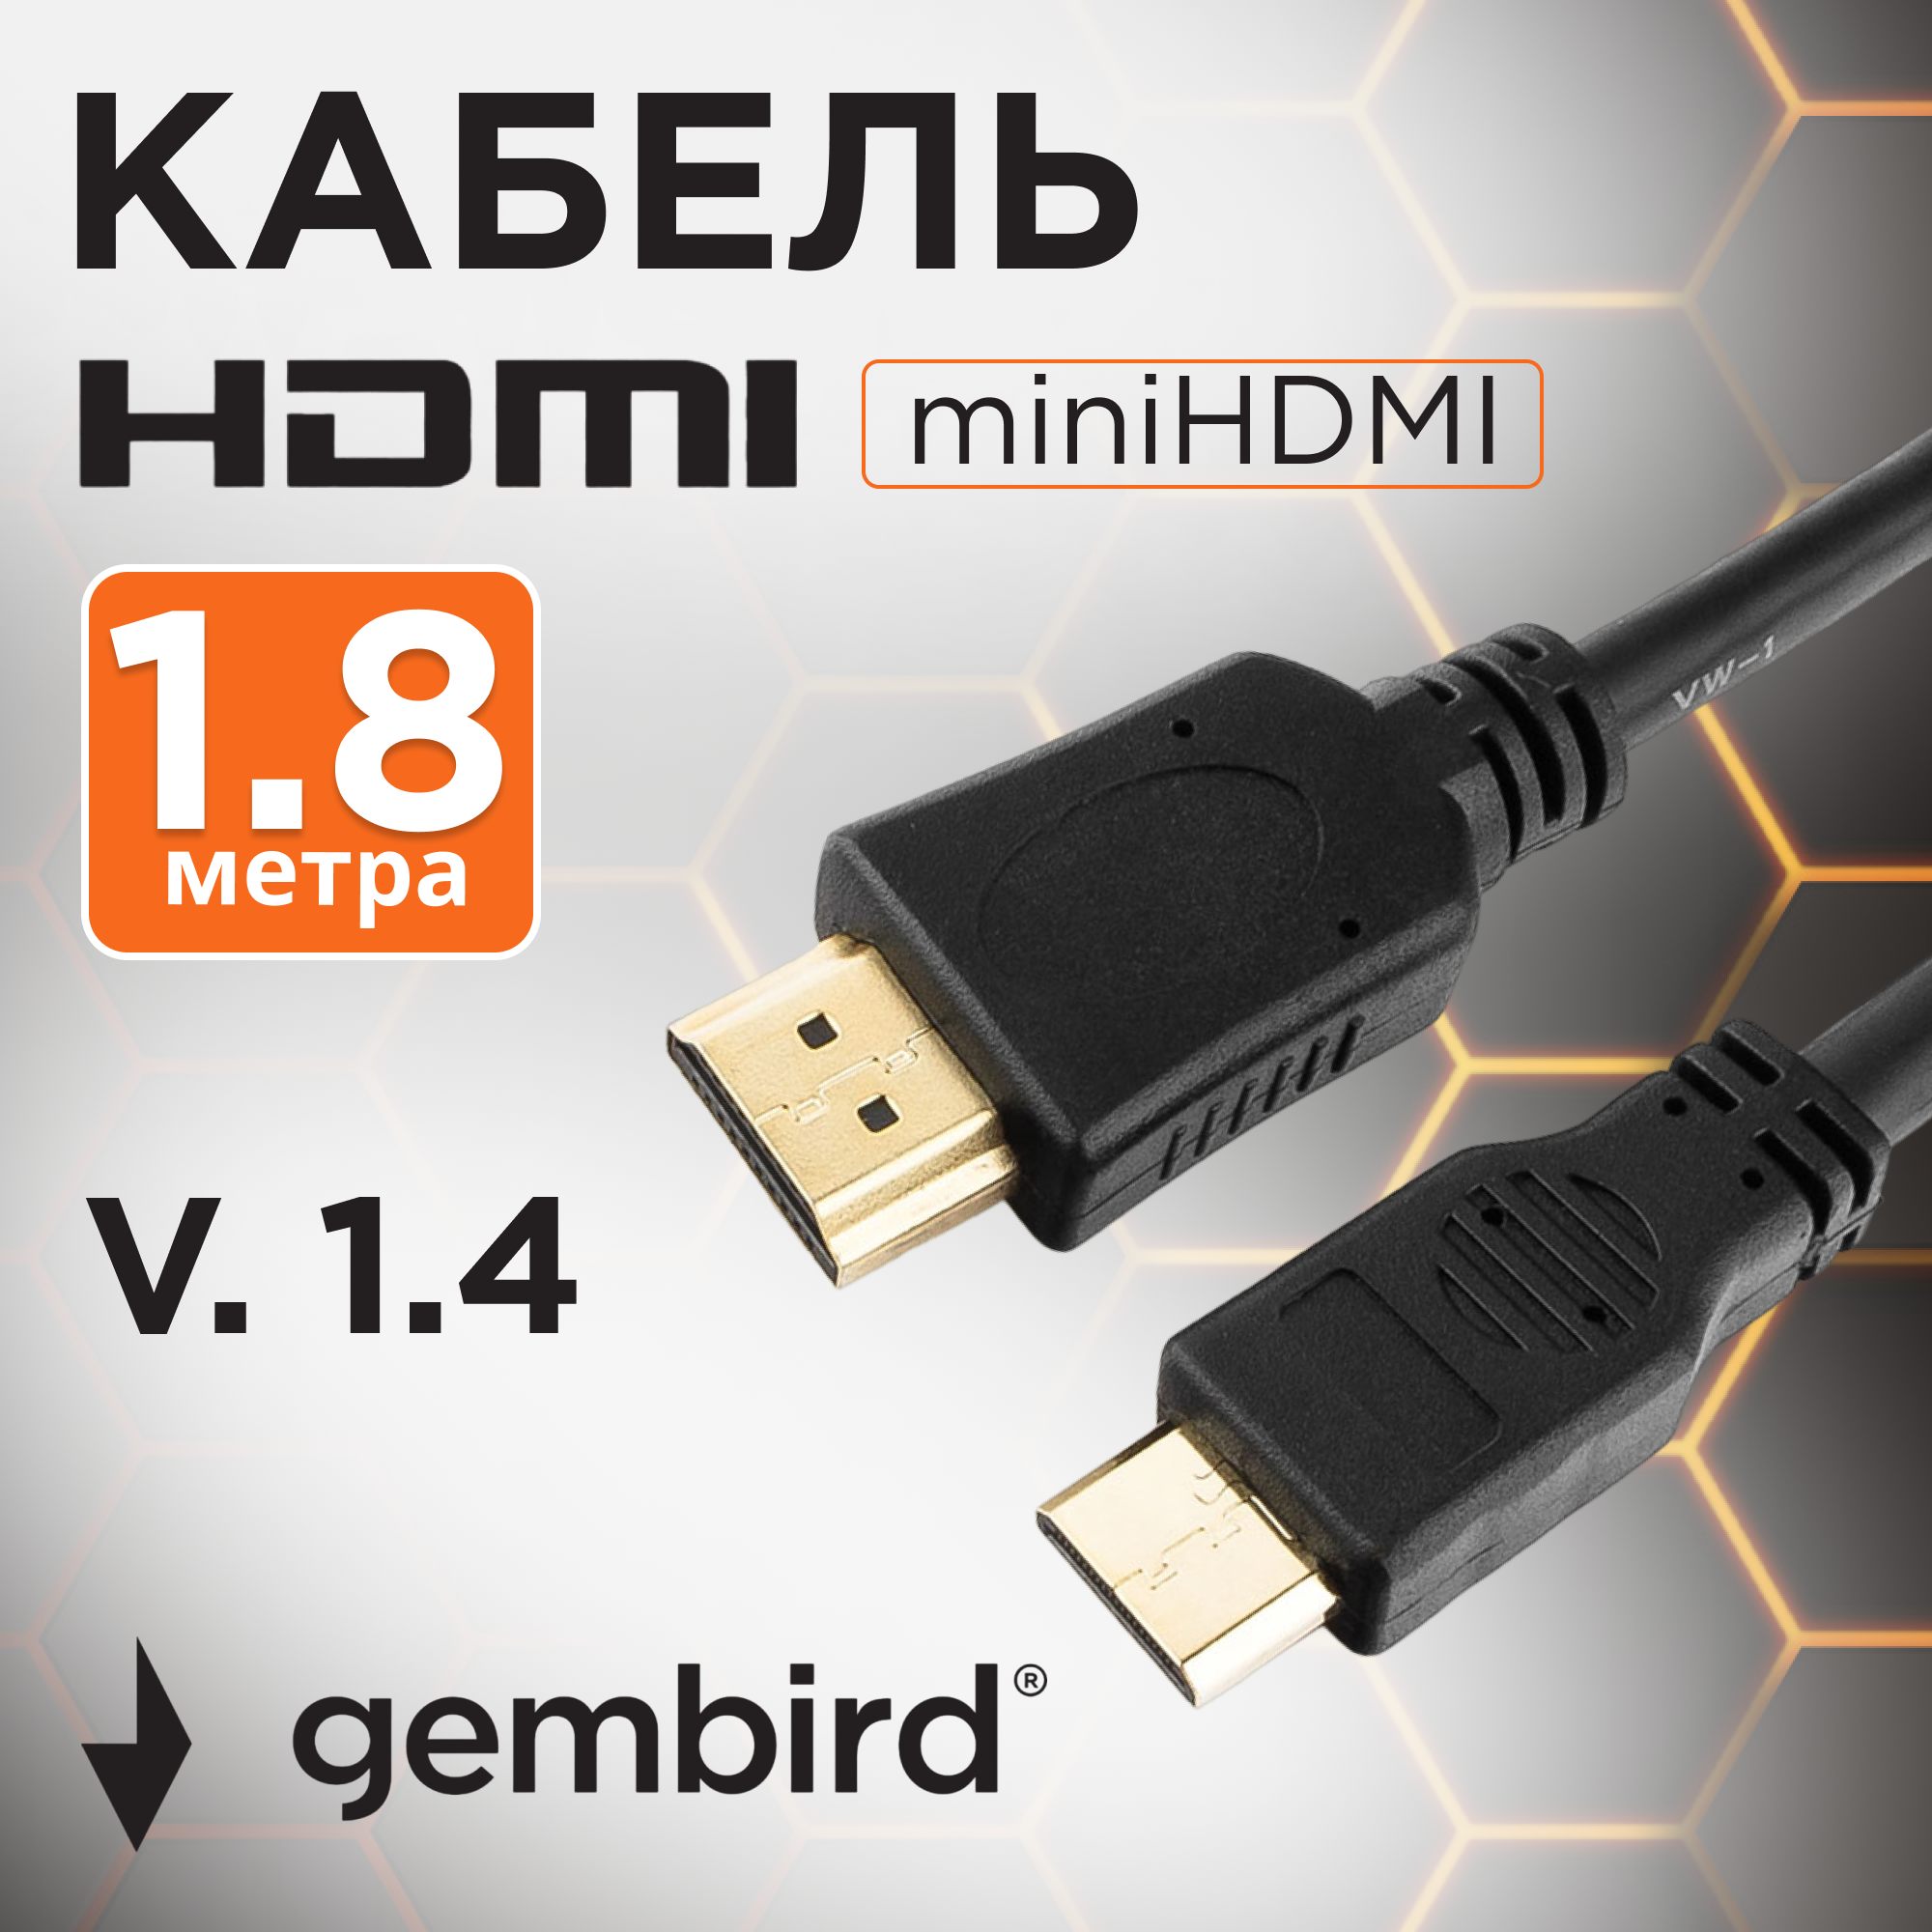 Кабель HDMI-miniHDMI Cablexpert CC-HDMI4C-6, v1,4, 19M/19M, 1,8 м